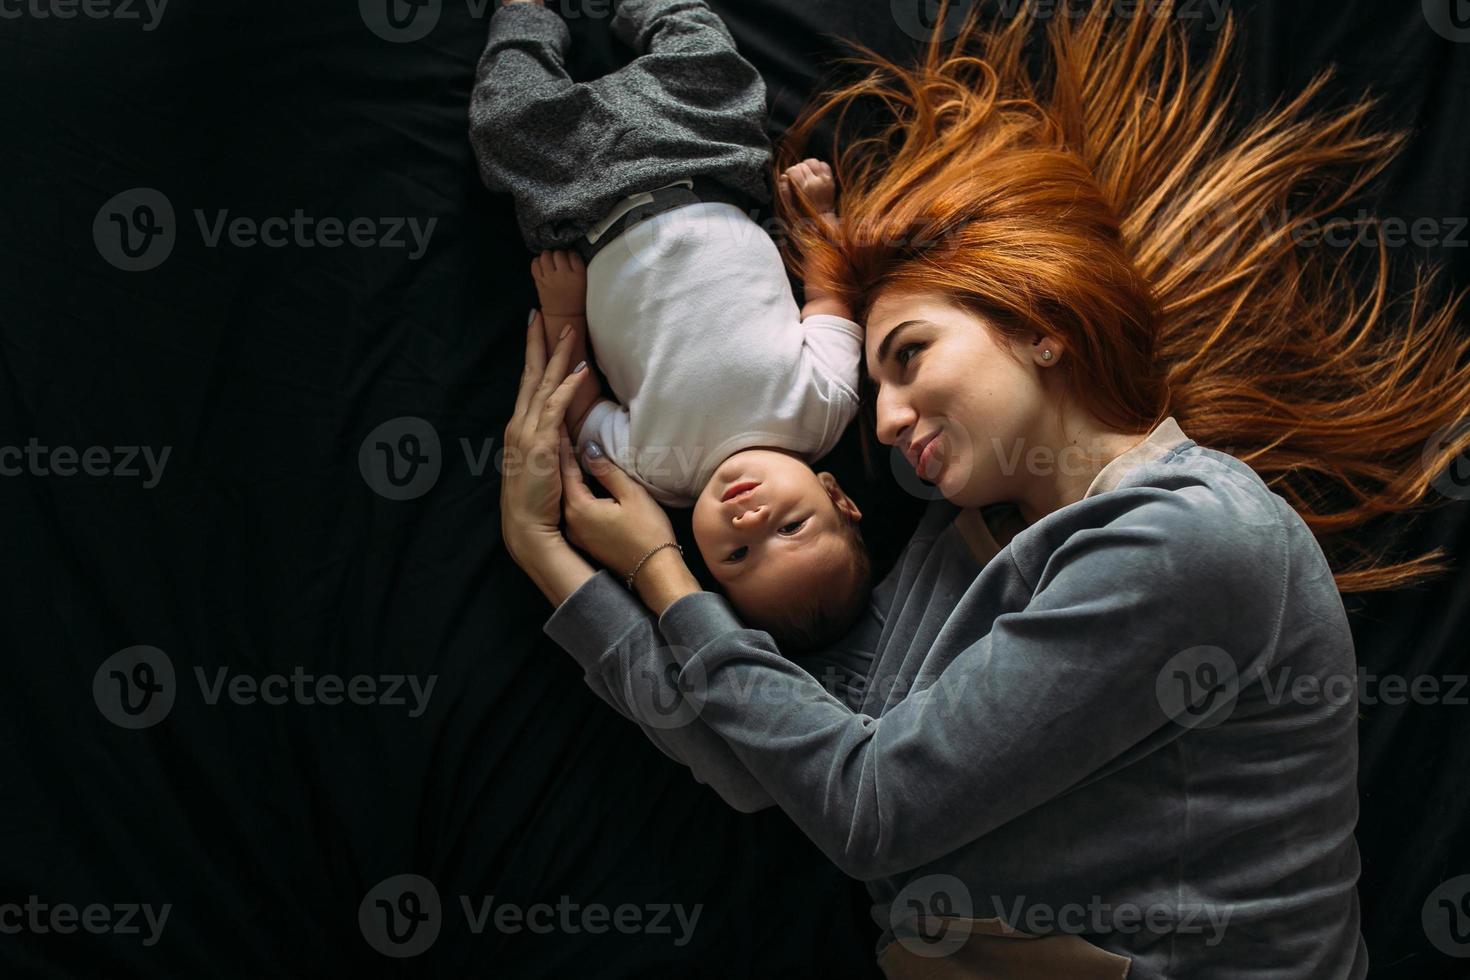 glückliche Mutter mit Baby, die zusammen auf dem Bett liegt foto